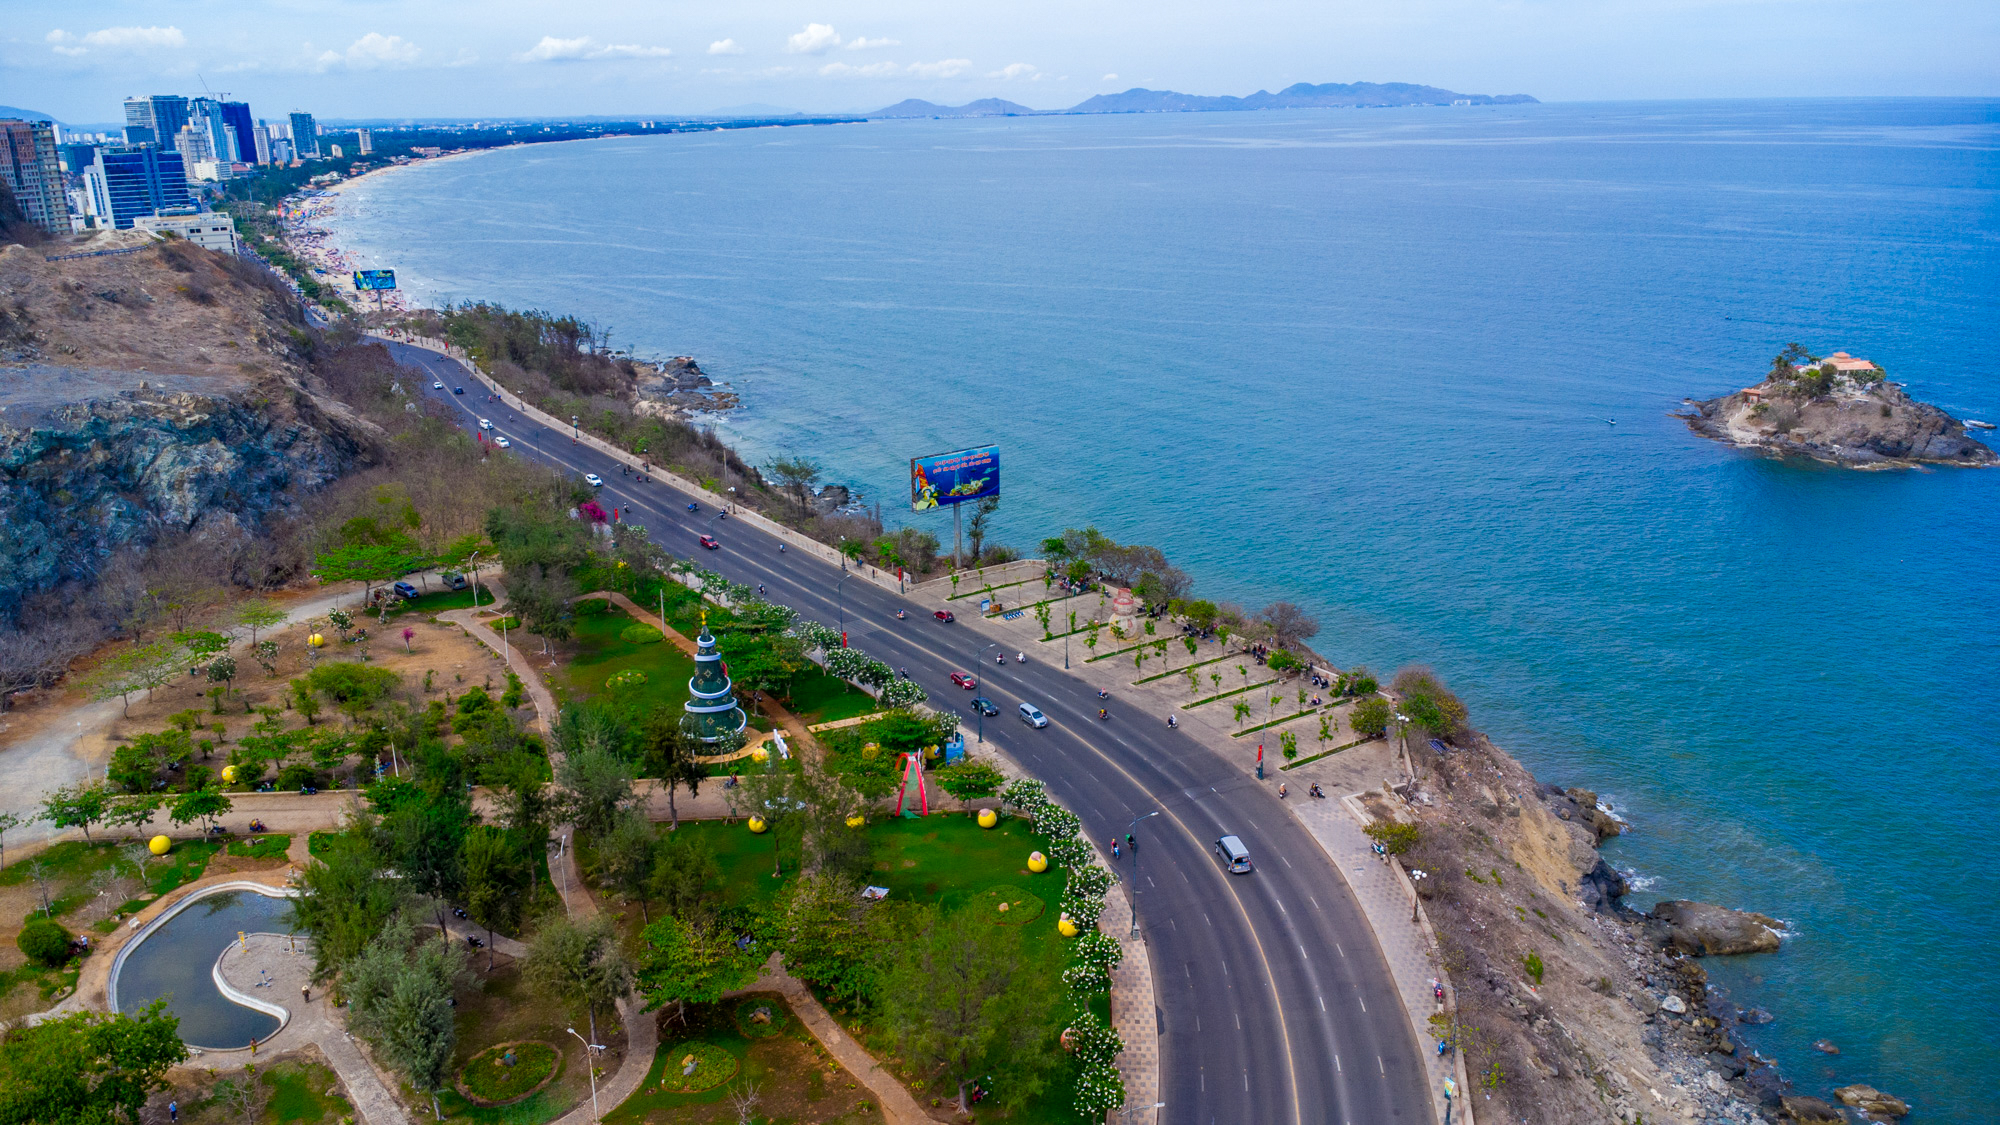 Đô thị loại một duy nhất nằm trên bán đảo, vừa có bờ biển đẹp top 5 Việt Nam, vừa thuộc tỉnh sở hữu hơn 93% trữ lượng dầu khí cả nước- Ảnh 4.